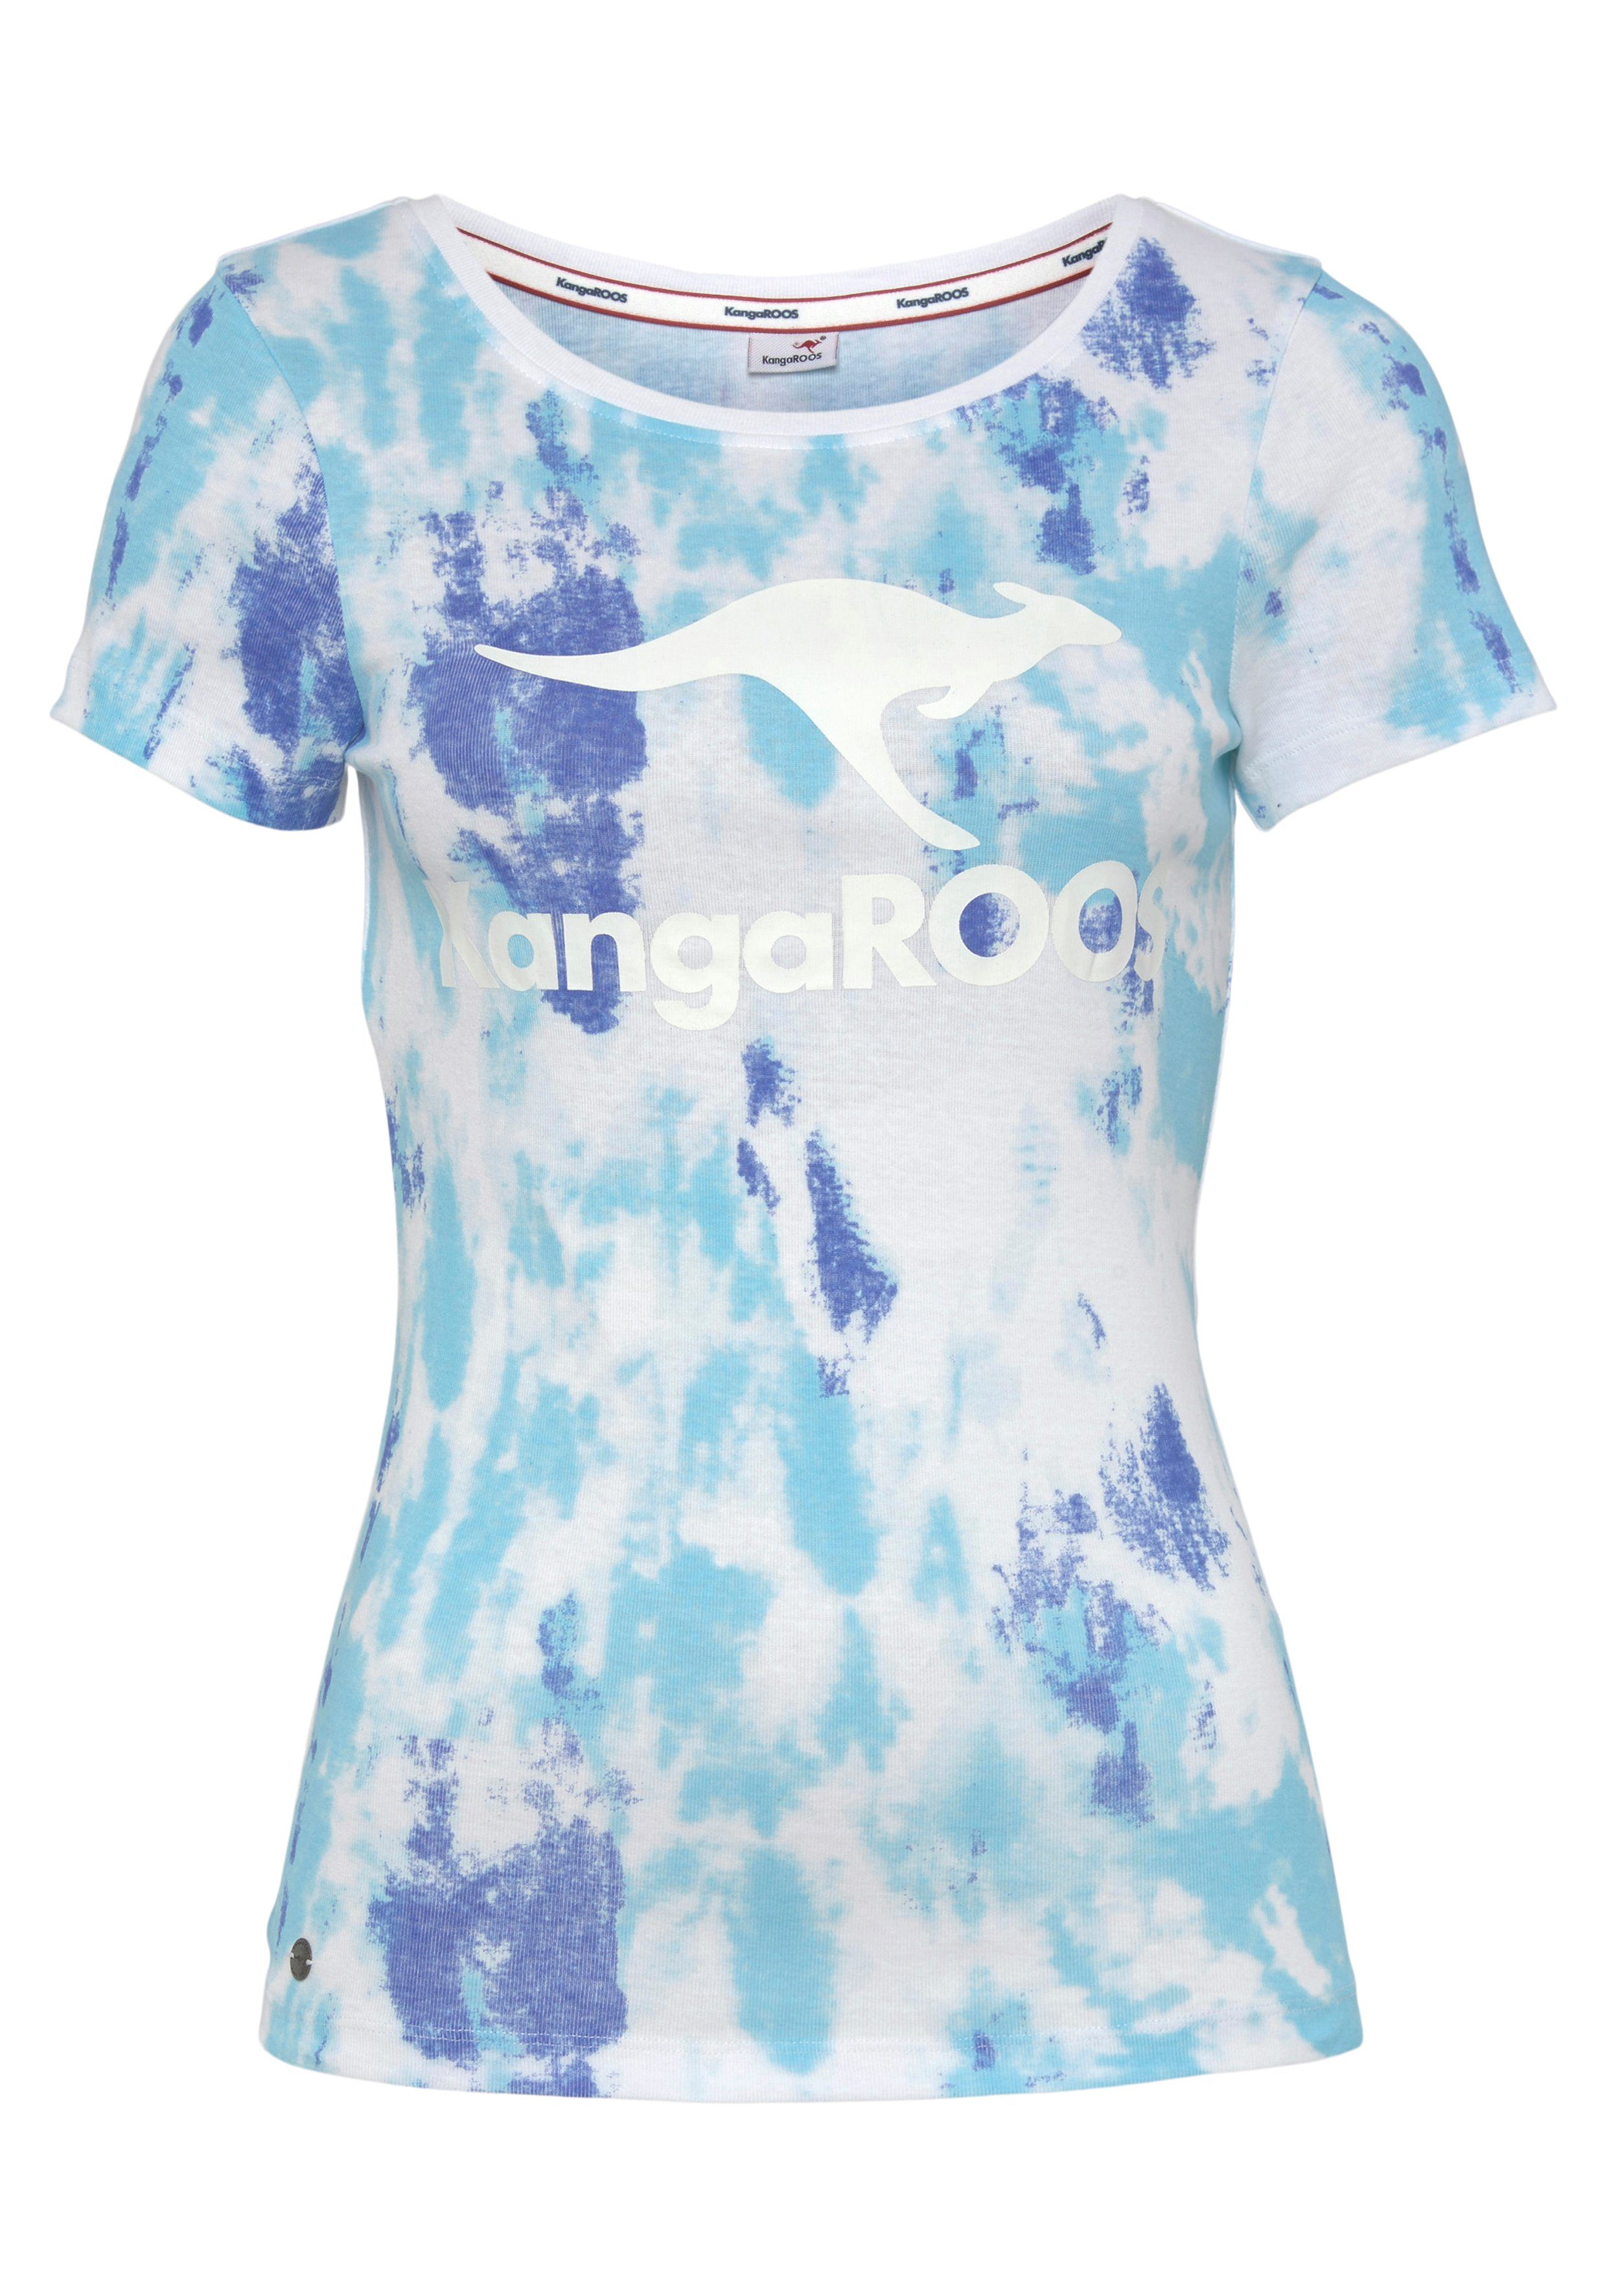 NEUE trendigen T-Shirt KOLLEKTION - KangaROOS im Batik-Look